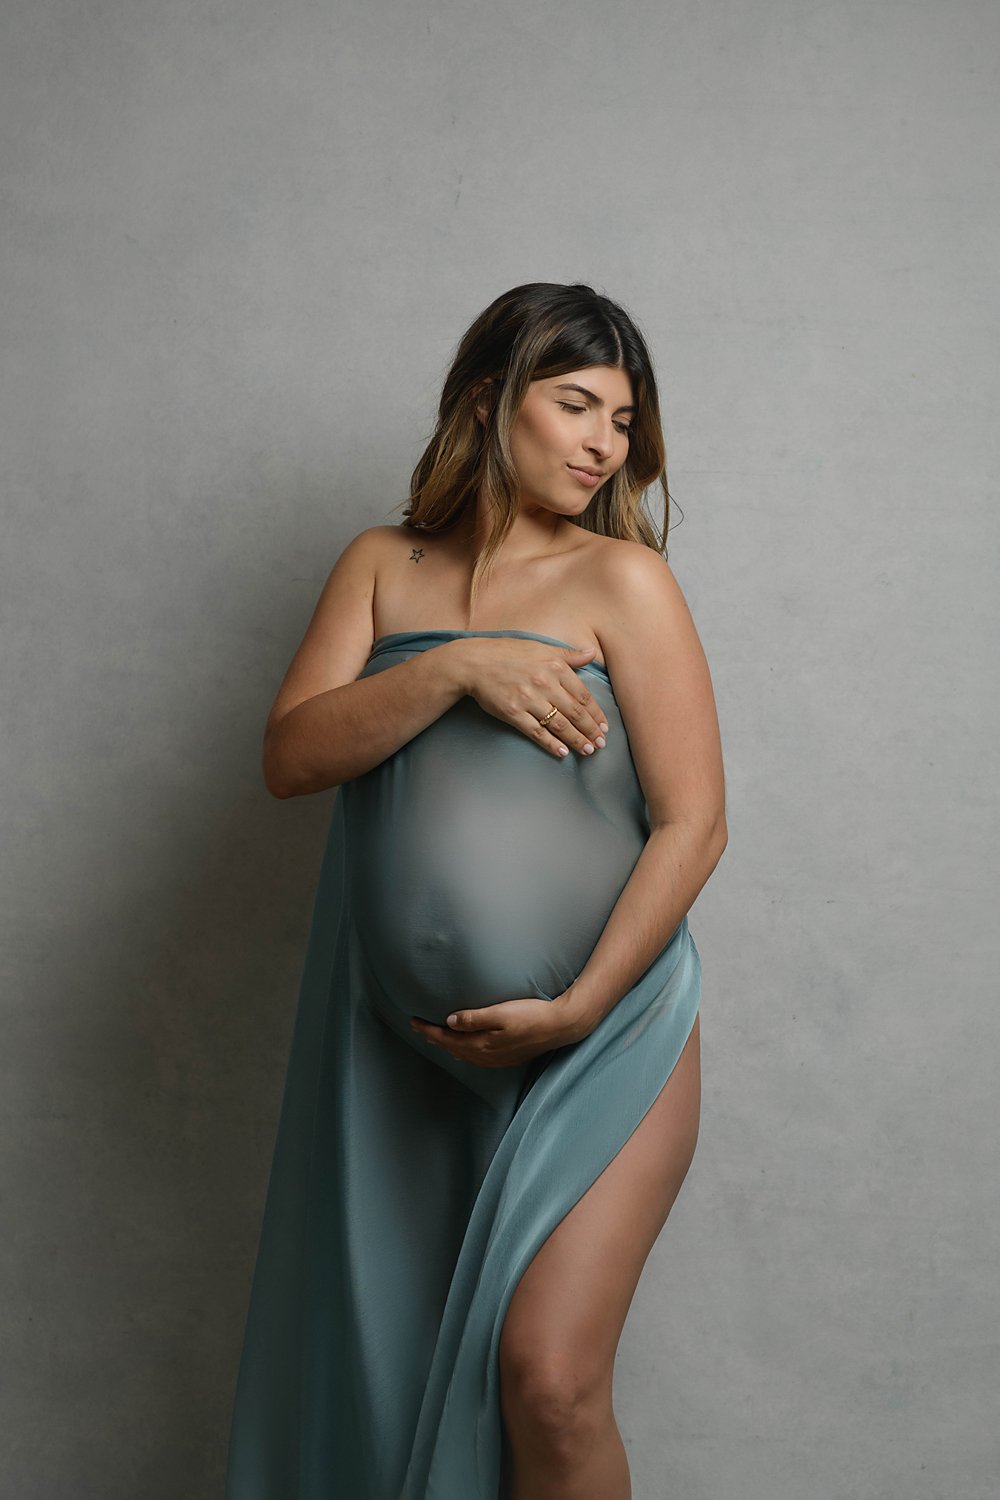 kimberly-gb-photography-maternity-maternidad-fotografia-embarazo-bebe-fotografo-puerto-rico-048.jpg